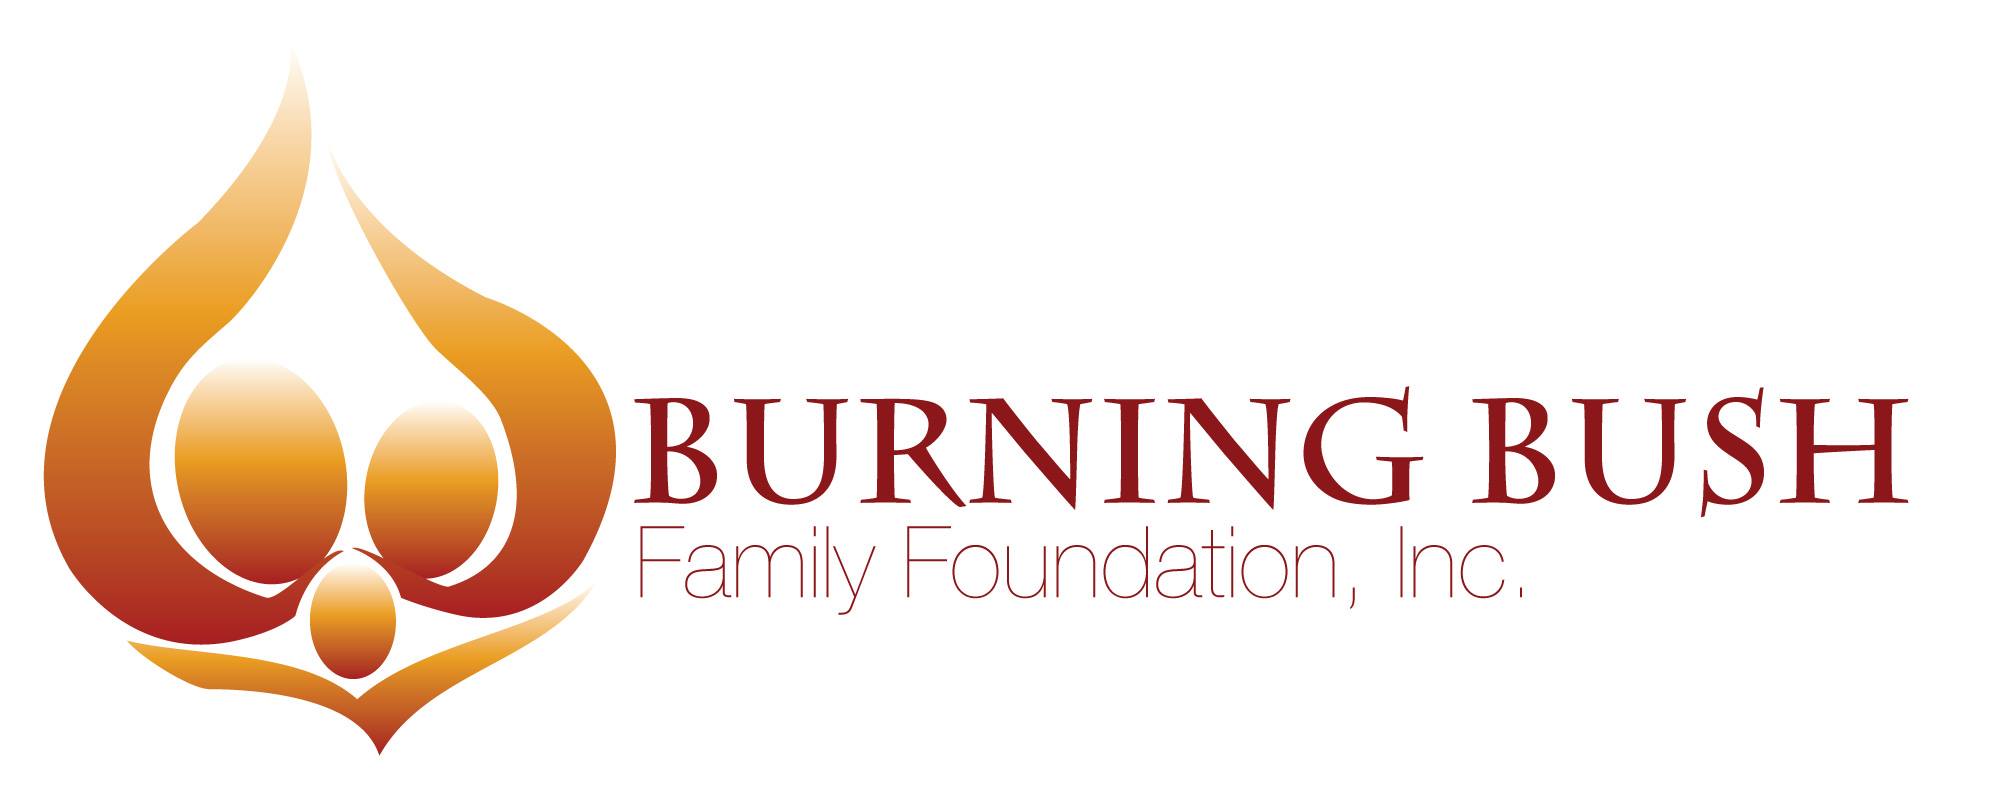 burning bush logo.jpg